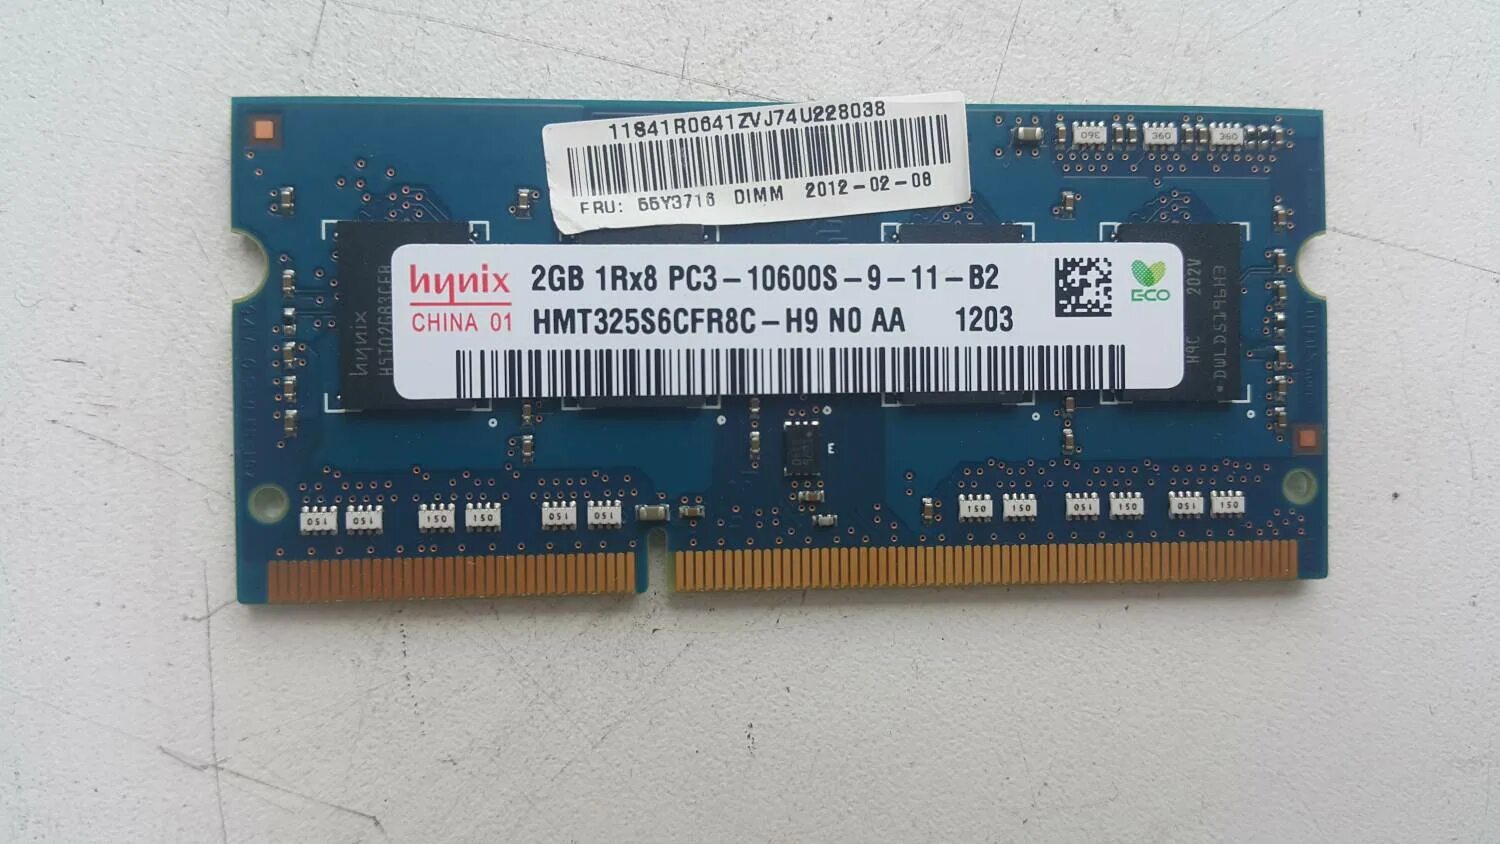 Память ddr3 10600. DIMM ddr3 10600 2gb. 1r[8 pc3-10600s-09-11-b2. 2gb 2rx8 pc3 10600s 09 11 b2. Оперативная память 4 ГБ 2rx8 pc3 10600s-9-11-b1.